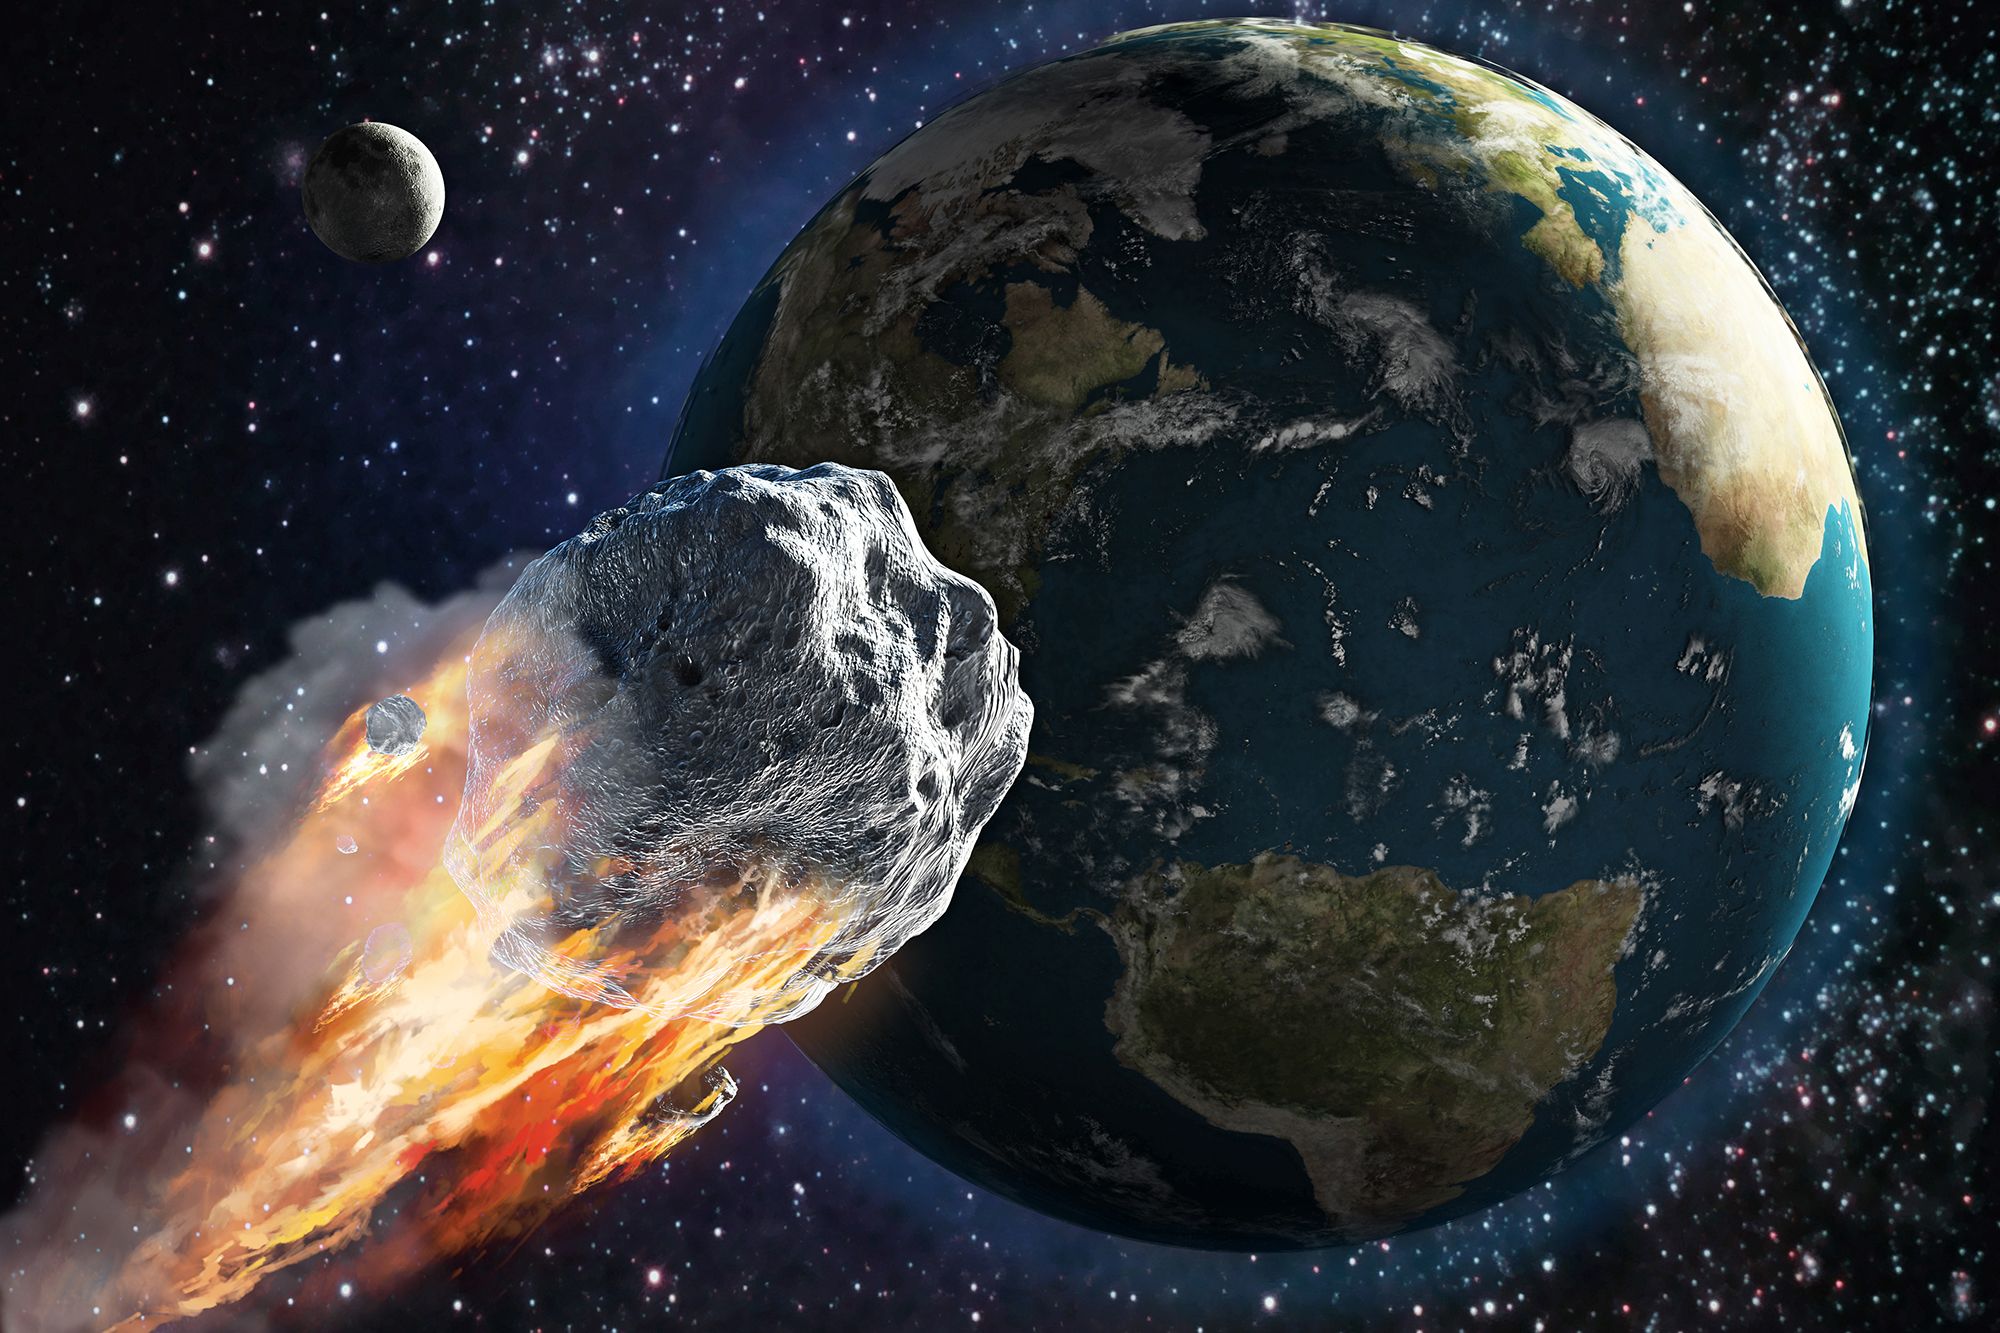 asteroid fly by earth 1 पृथ्वी की ओर बढ़ रहा है एक बड़ा खतरा, सूरज की सतह से निकली हैं 'सूपर डॉट गैसें'